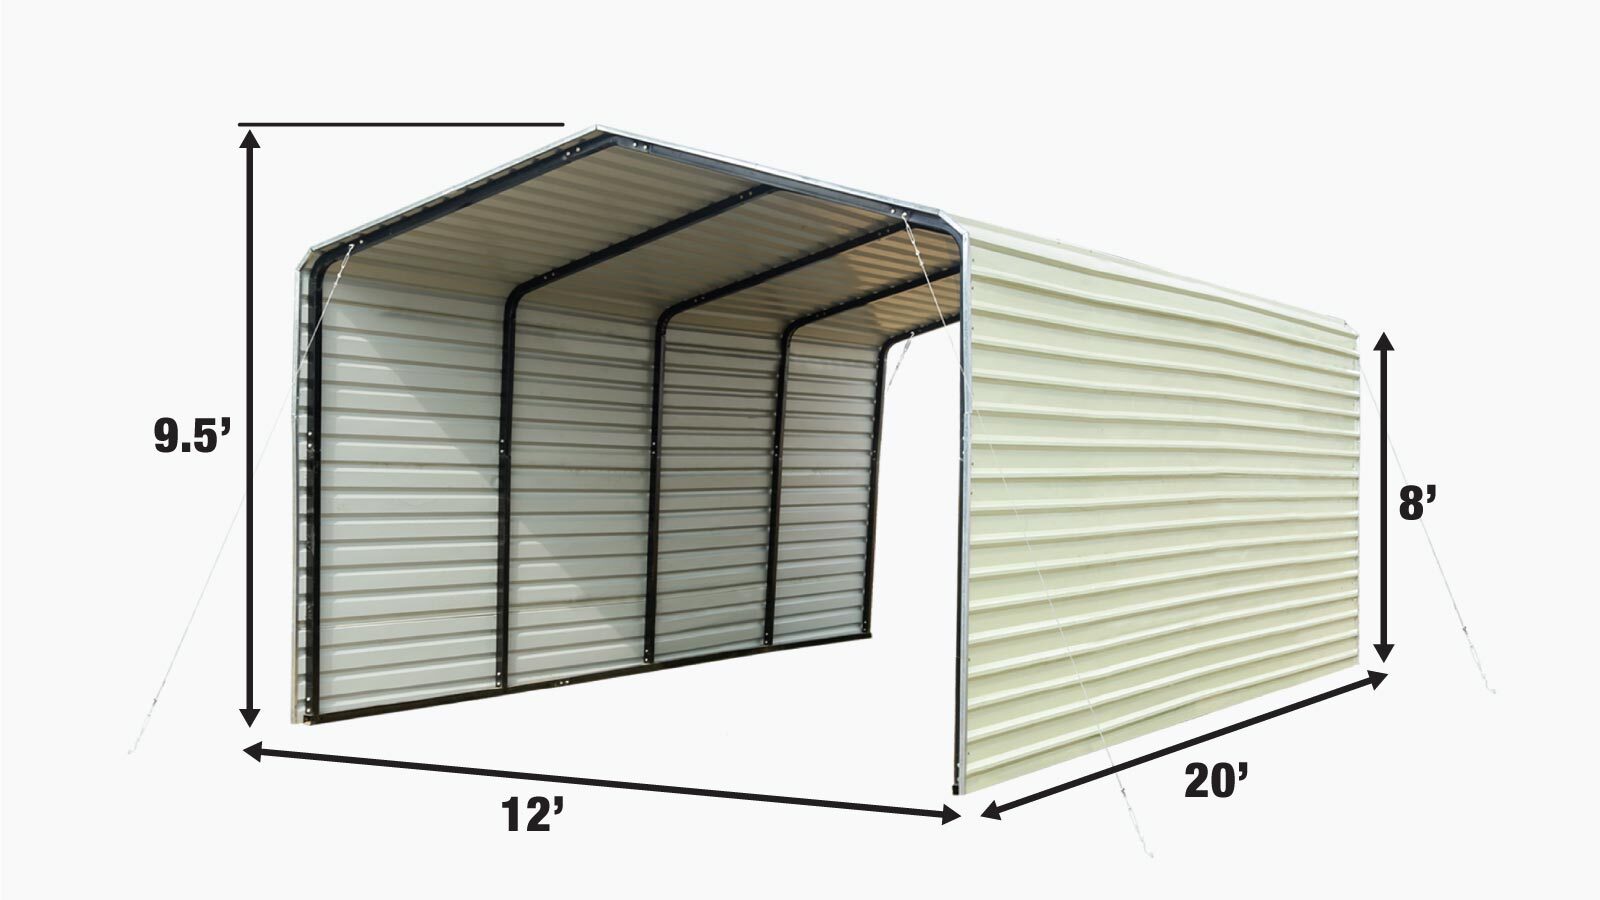 TMG Industrial 12' x 20' Carport tout en acier avec parois latérales fermées, toit galvanisé, cadre enduit de poudre, revêtement de peinture polyester, câbles de stabilisation, TMG-CP1220F-specifications-image